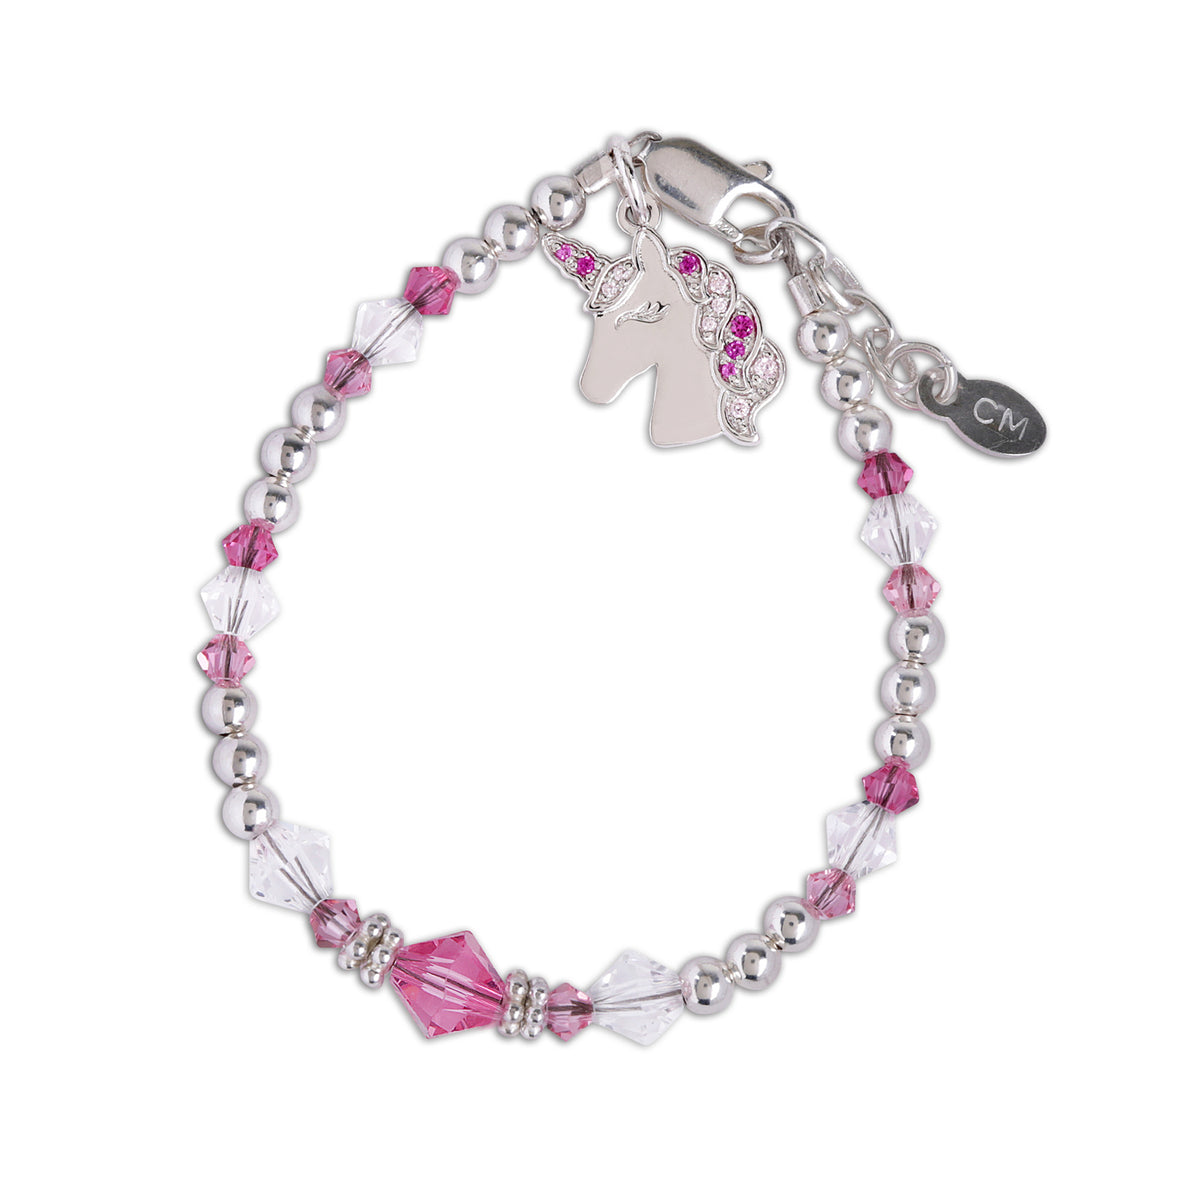 Unicorn Bracelet, Unicorn Gifts, Beaded Stretch Bracelet, Pink and Silver,  Little Girl Gifts, Kids Bracelet, Pretty Sparkly Charm Bracelet 